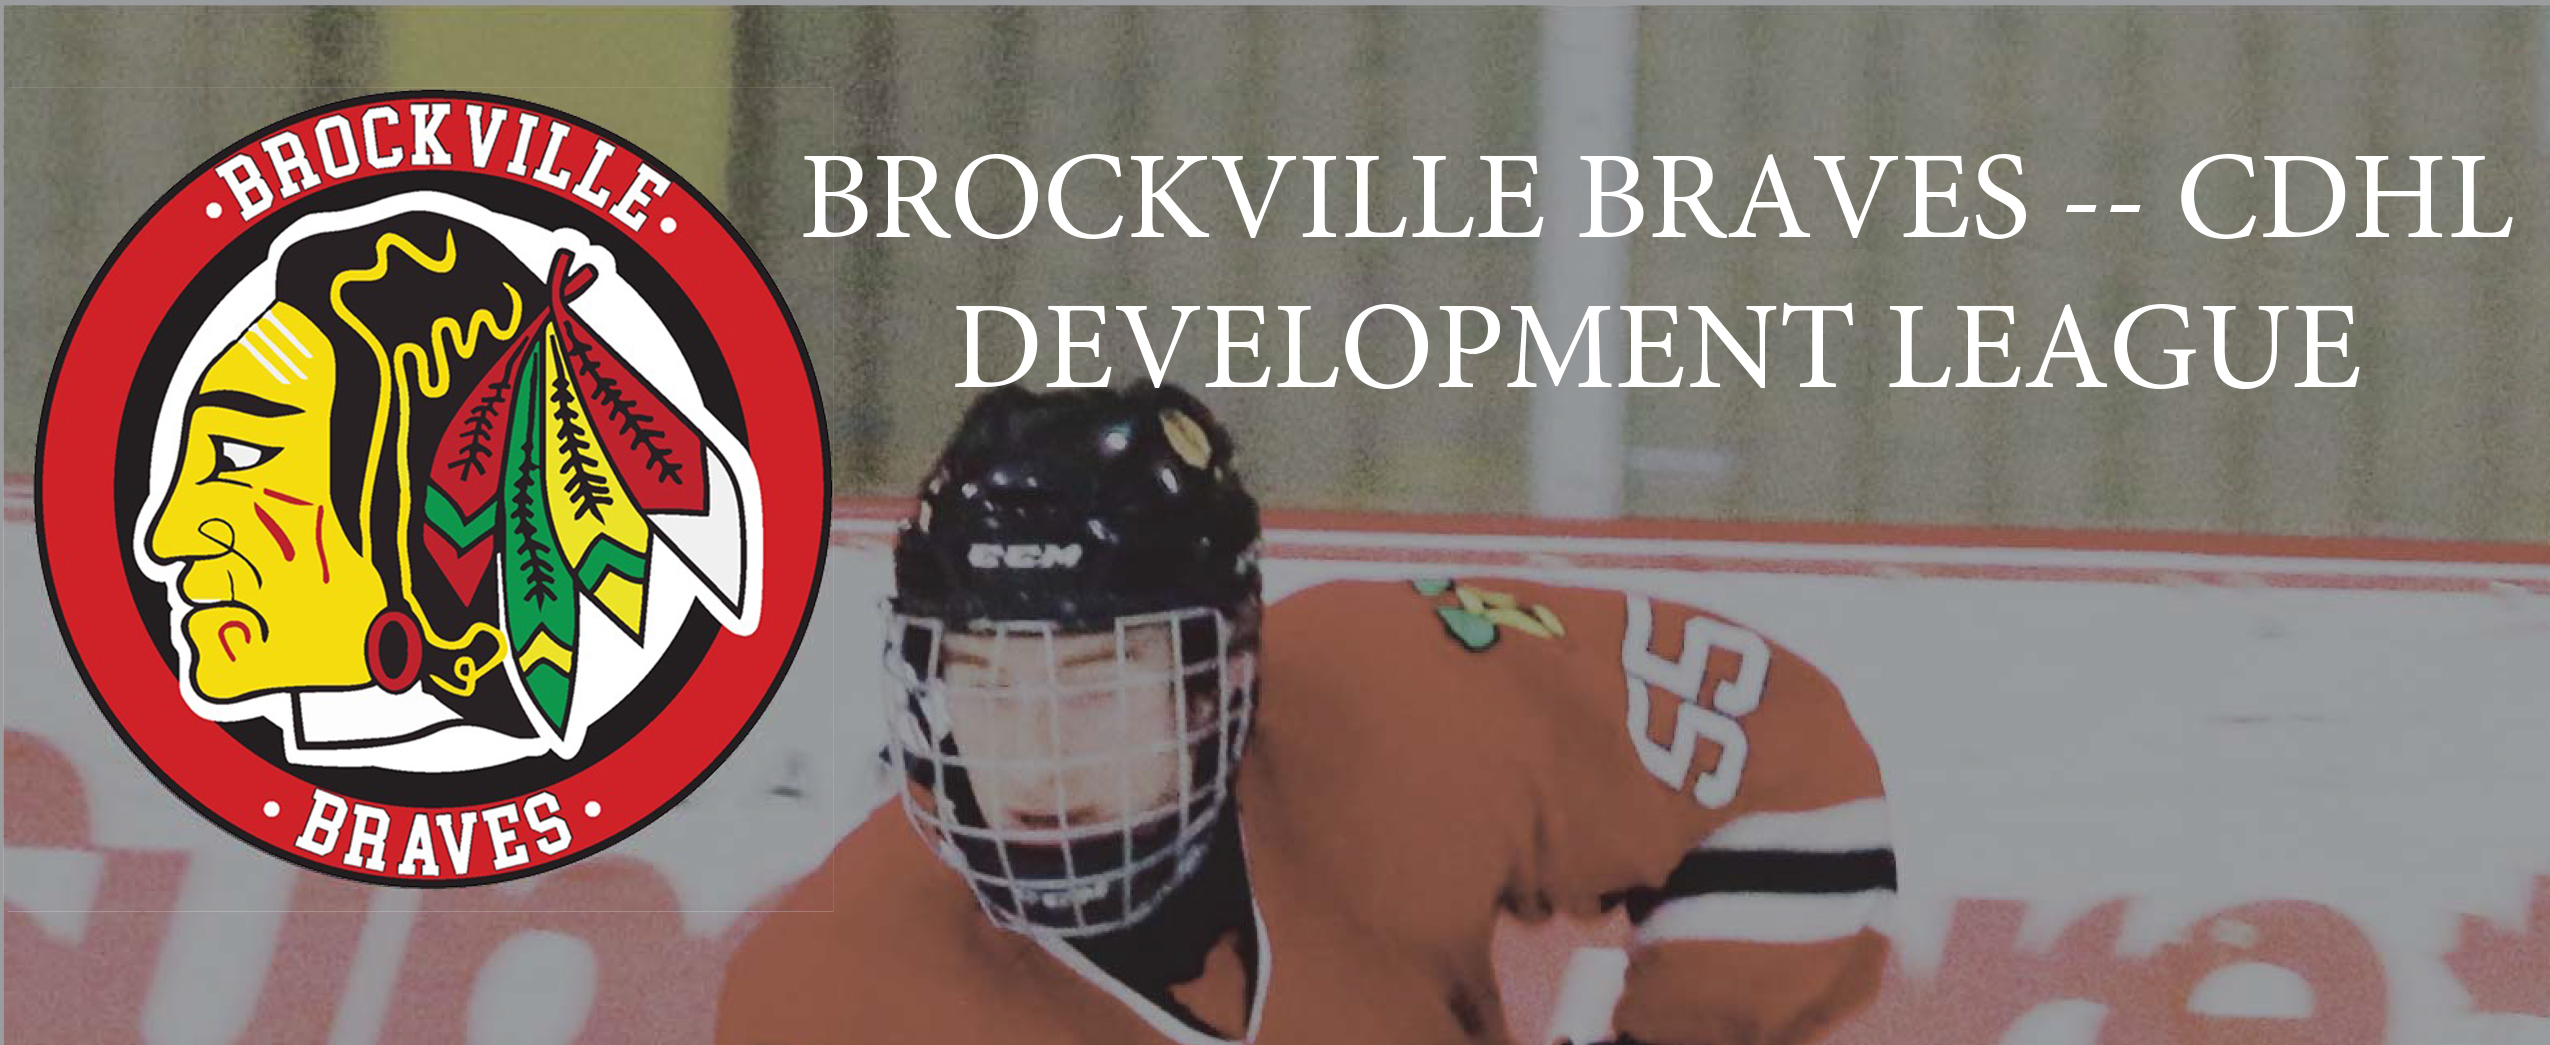 https://braves.cchl.hockeytech.com/wp-content/uploads/sites/9/2022/02/Brockville-Braves-CDHL-Banner.jpg